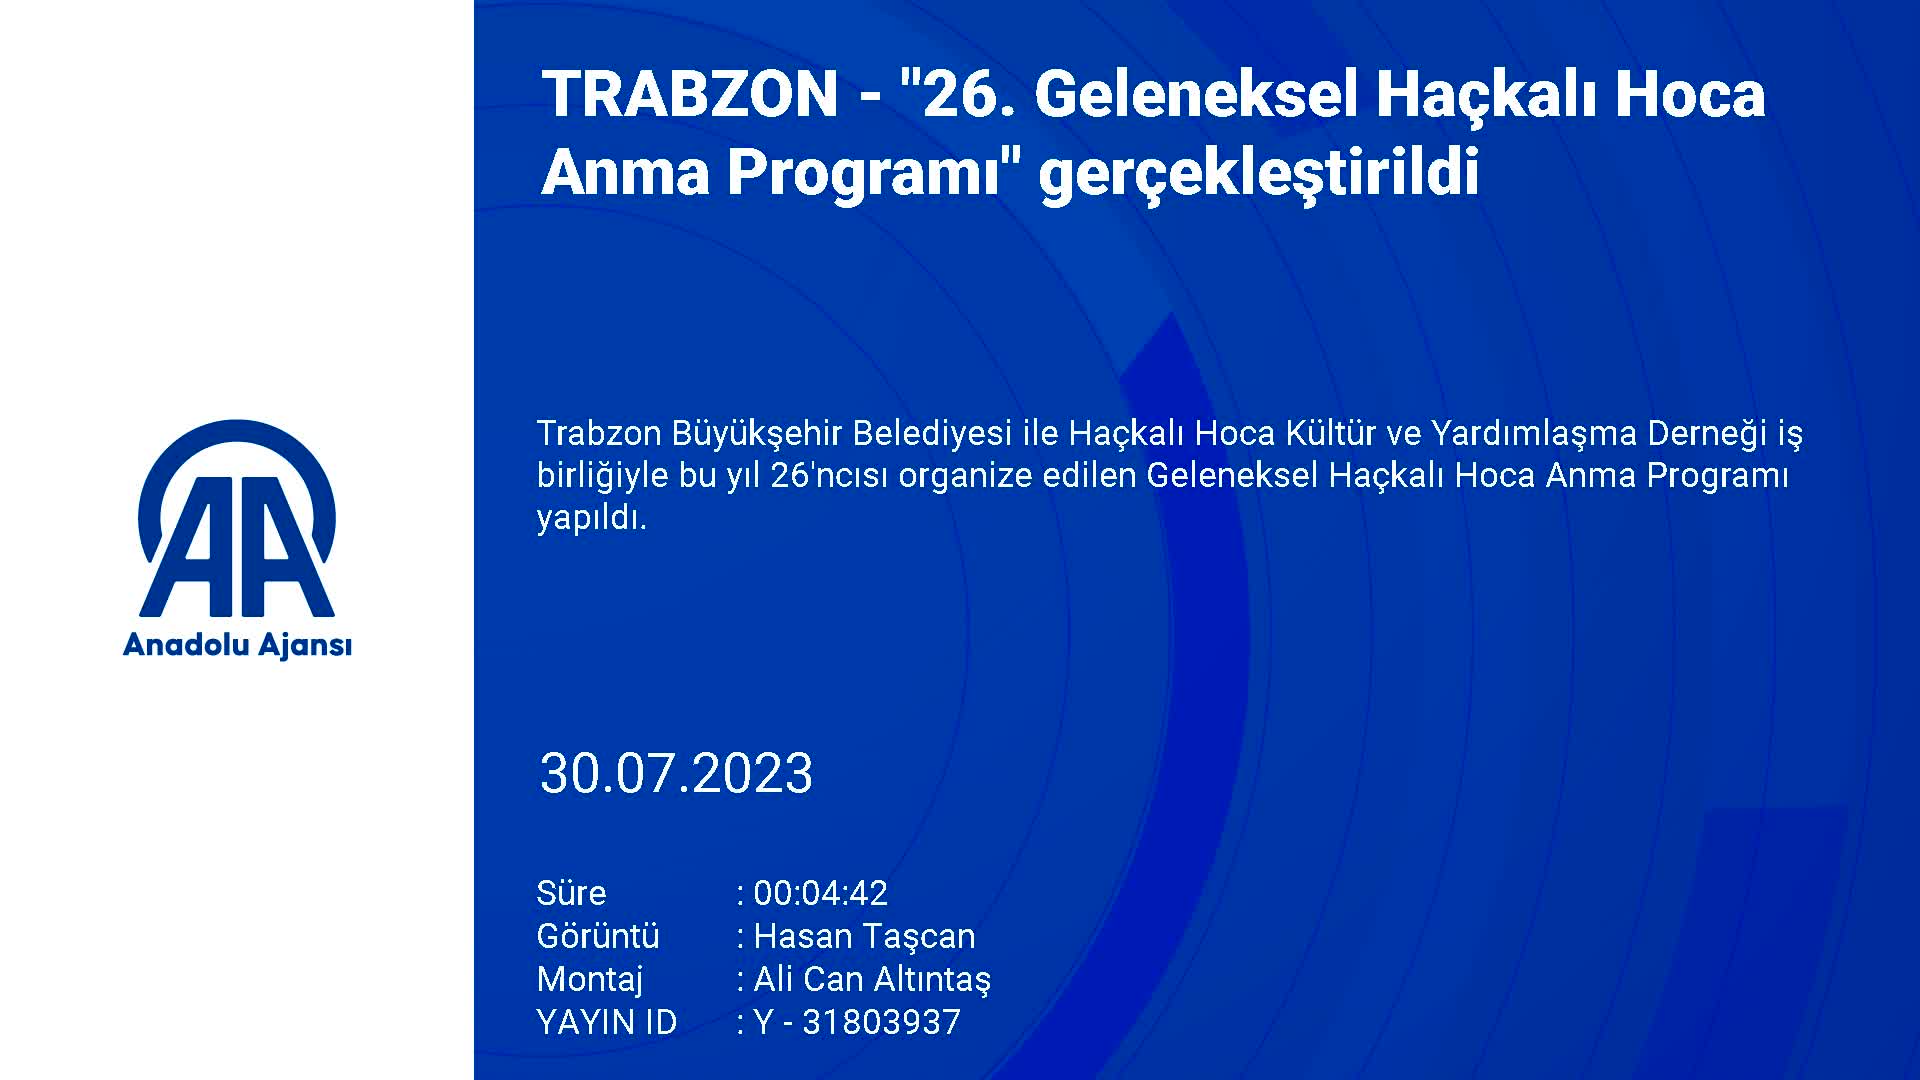 Trabzon’da “26. Geleneksel Haçkalı Hoca Anma Programı” gerçekleştirildi